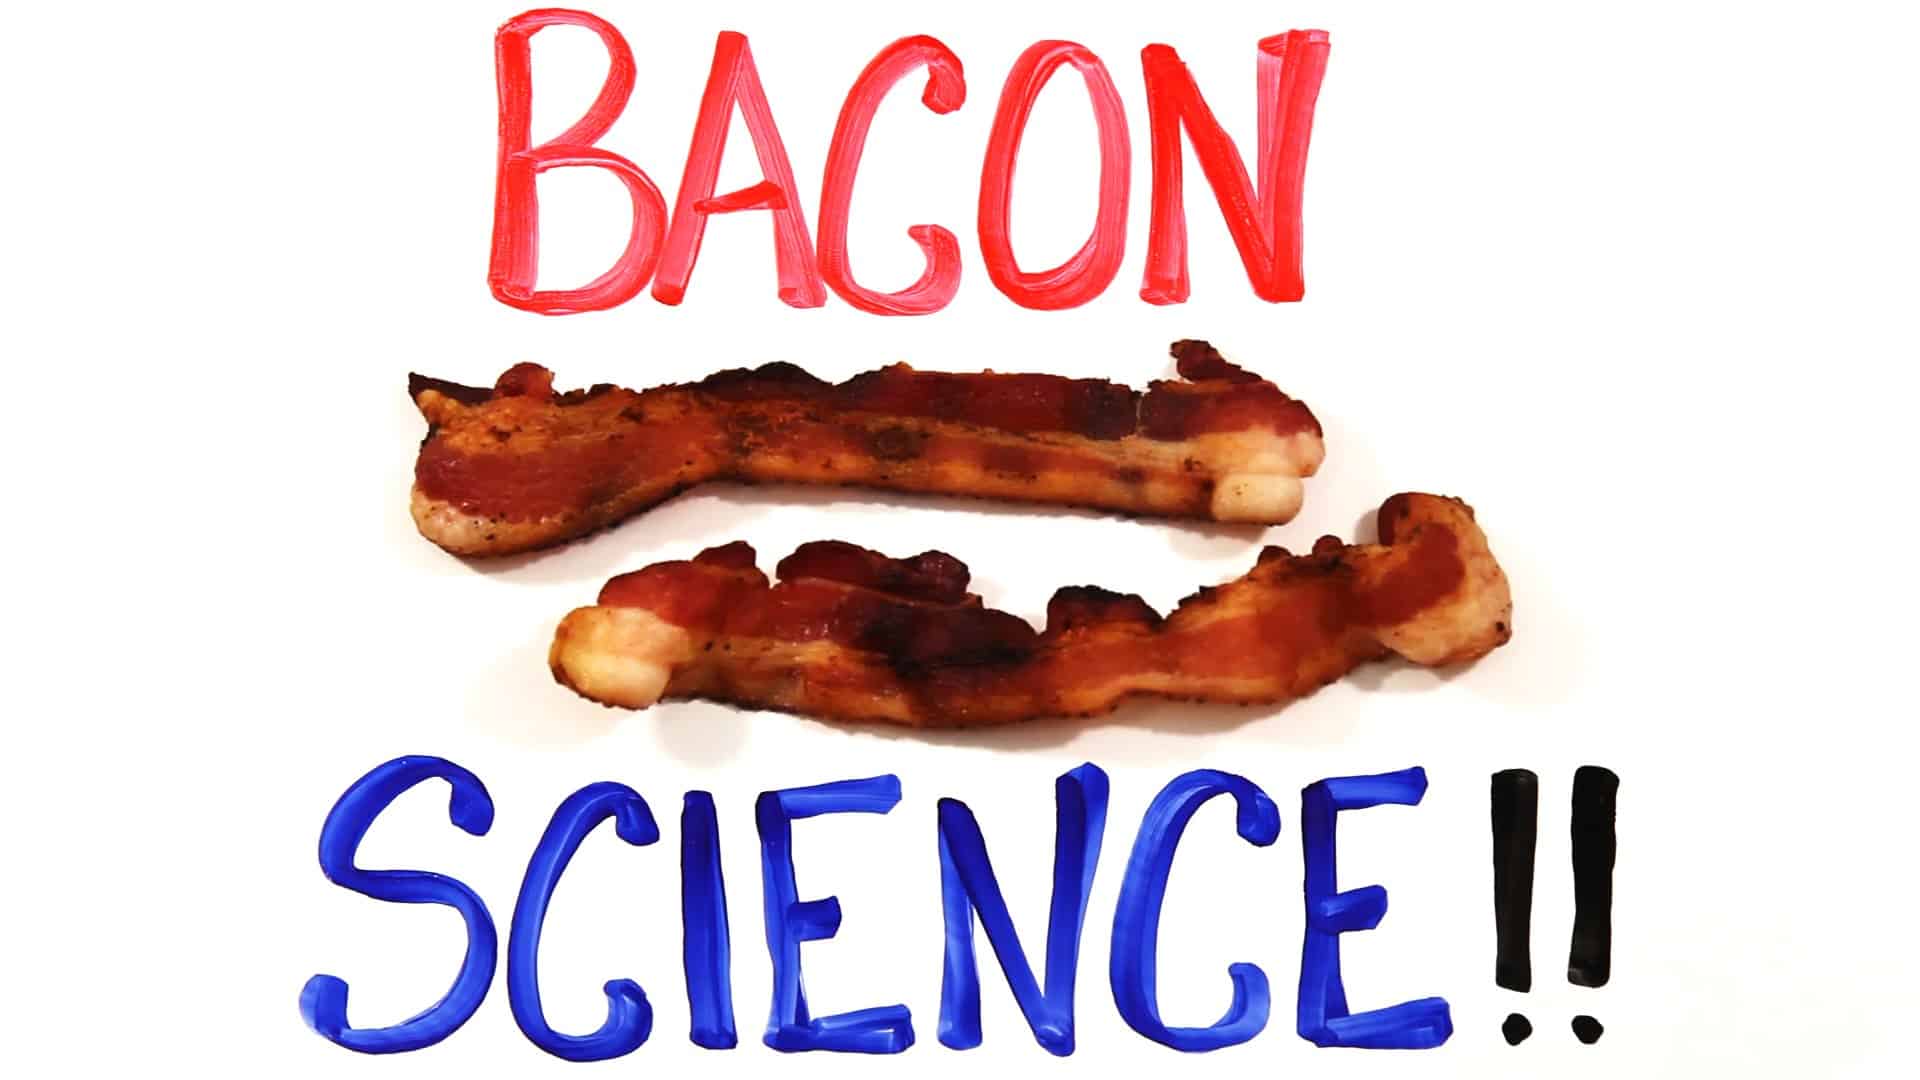 Vedecky považovaná za slaninu